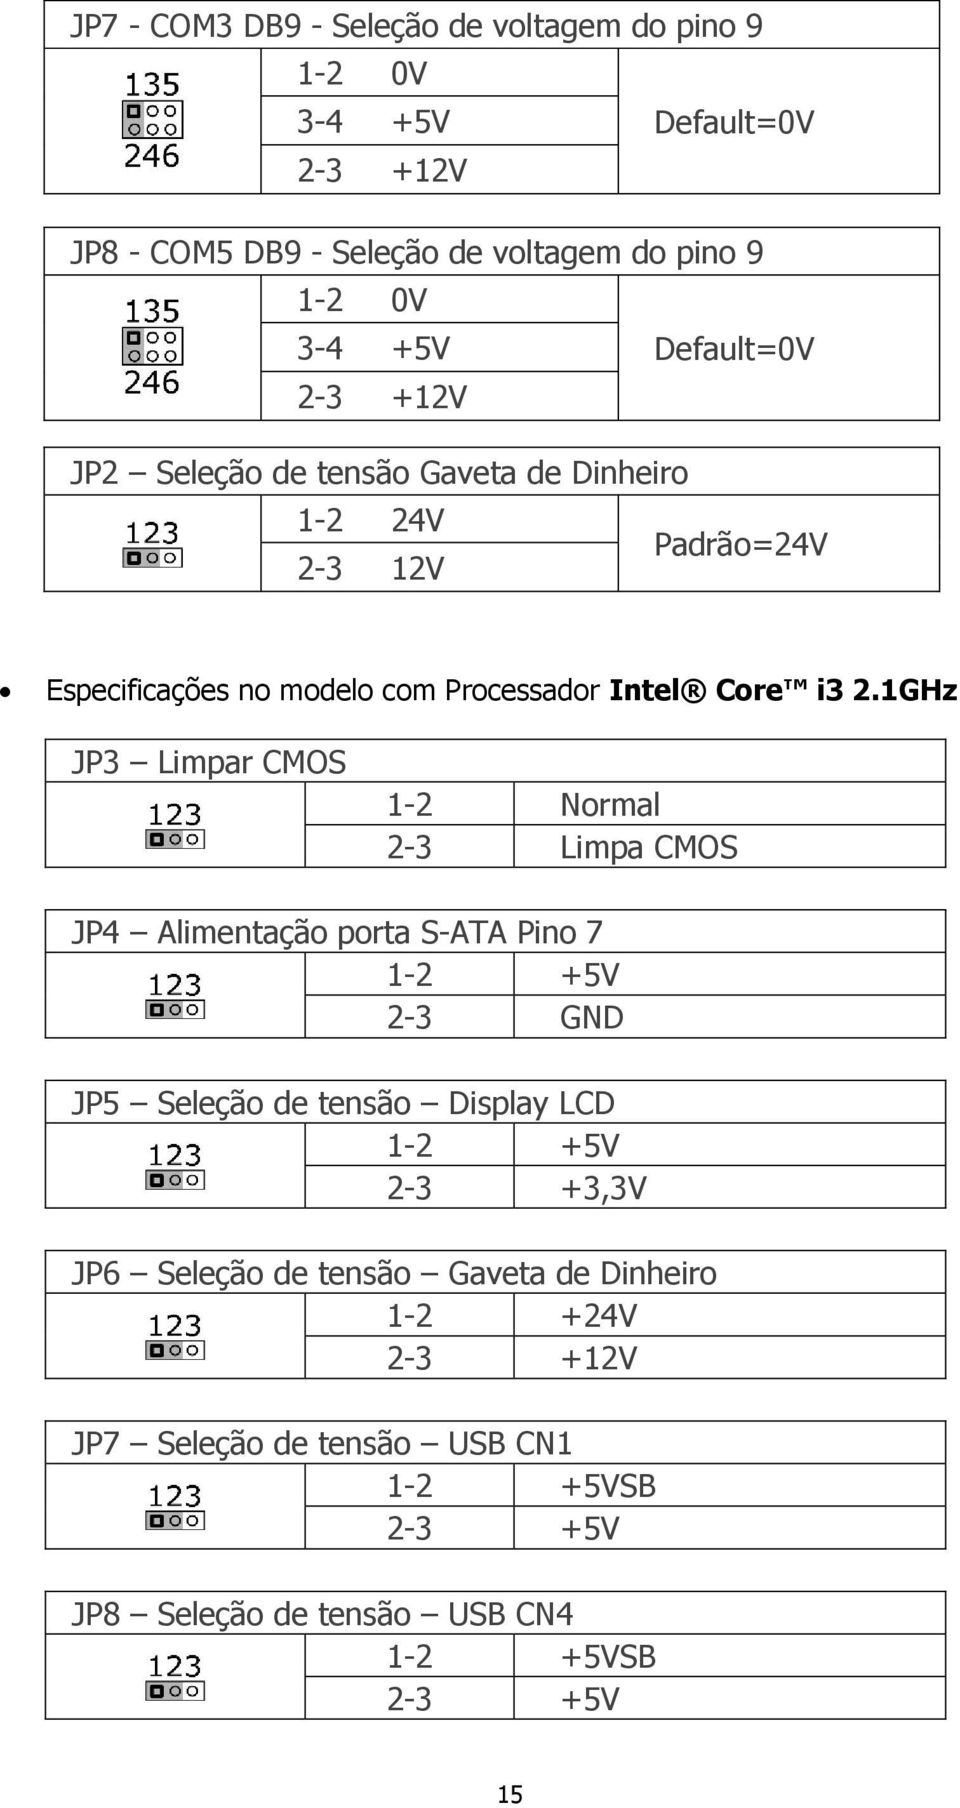 1GHz JP3 Limpar CMOS 1-2 Normal 2-3 Limpa CMOS JP4 Alimentação porta S-ATA Pino 7 1-2 +5V 2-3 GND JP5 Seleção de tensão Display LCD 1-2 +5V 2-3